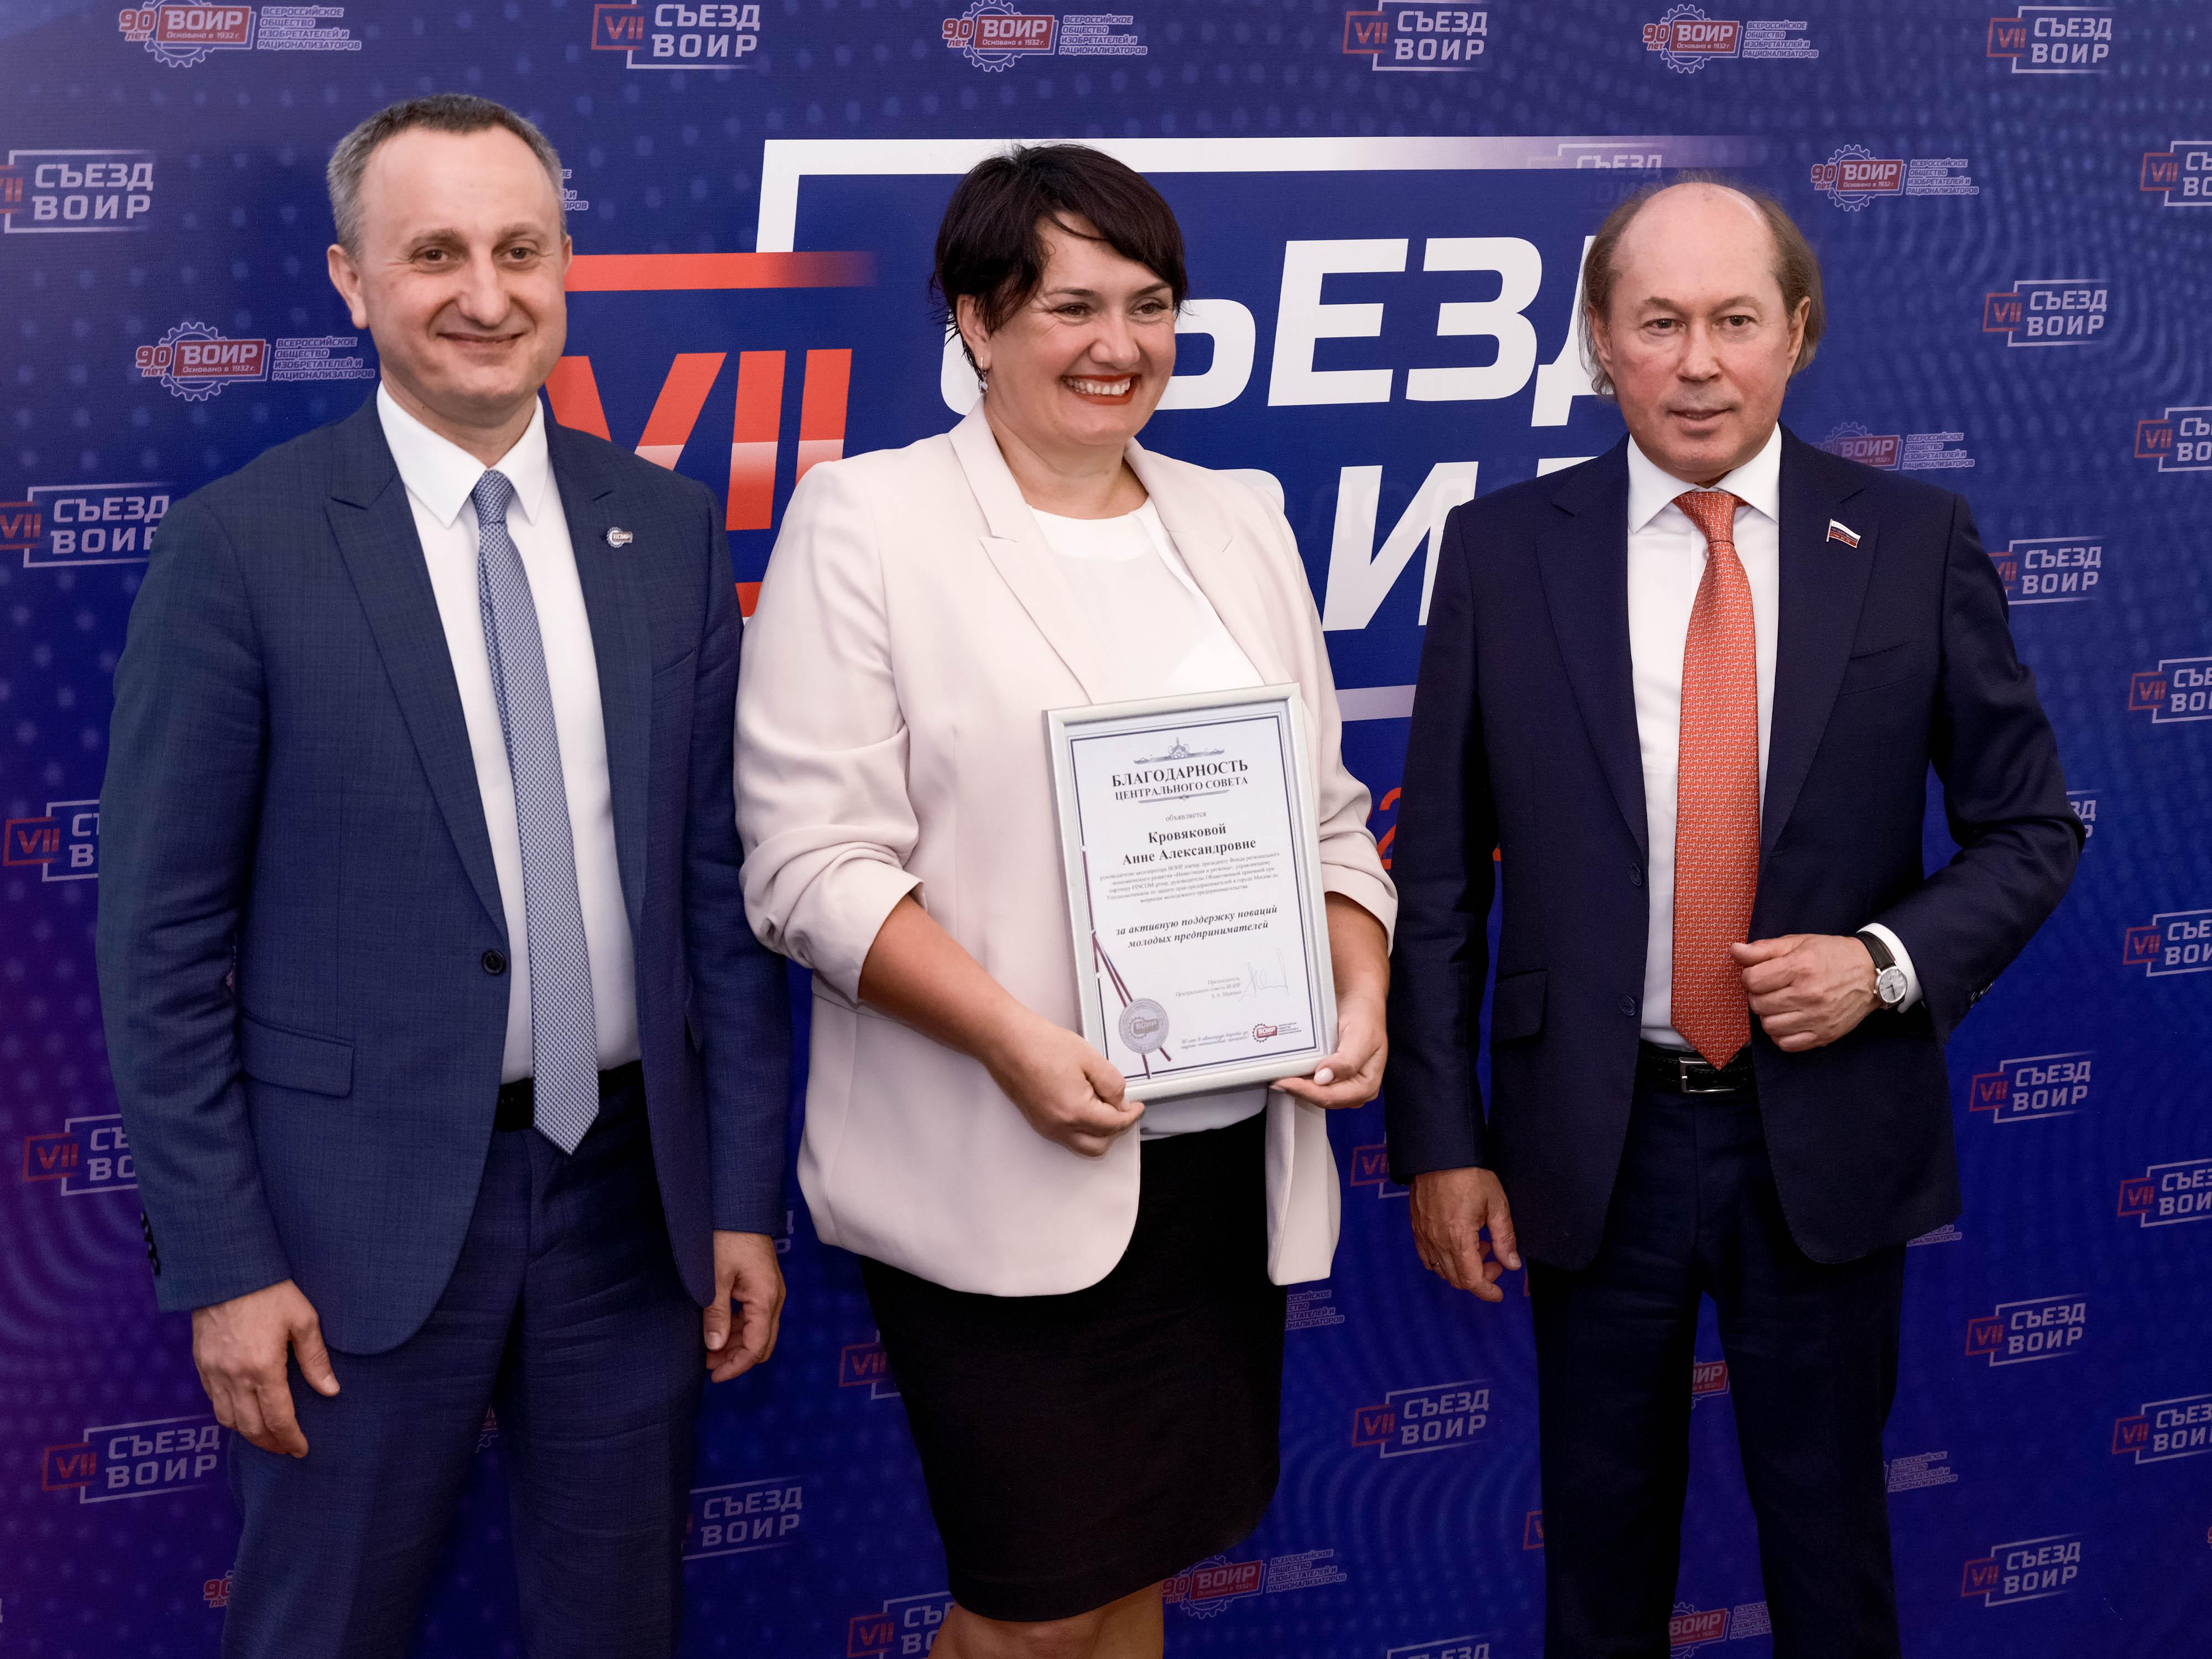 Анна Кровякова получила благодарность за активную поддержку молодых предпринимателей от Центрального совета ВОИР